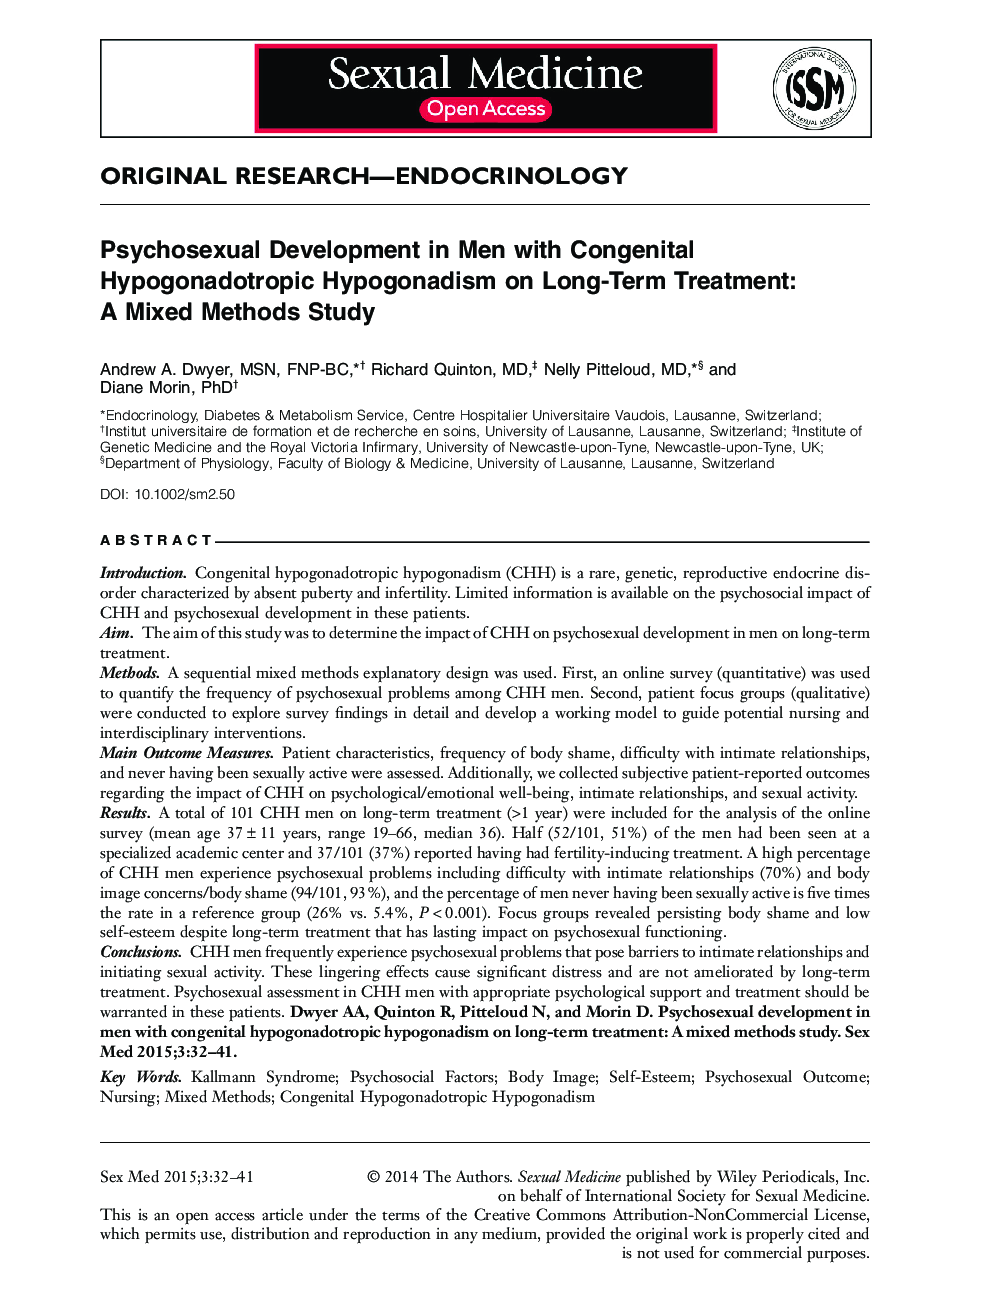 توسعه روانشناختی در مردان مبتلا به هیپوگنادیسم هیپوگنادوتروپ مادرزادی در درمان طولانی مدت: مطالعه روش های ترکیبی 